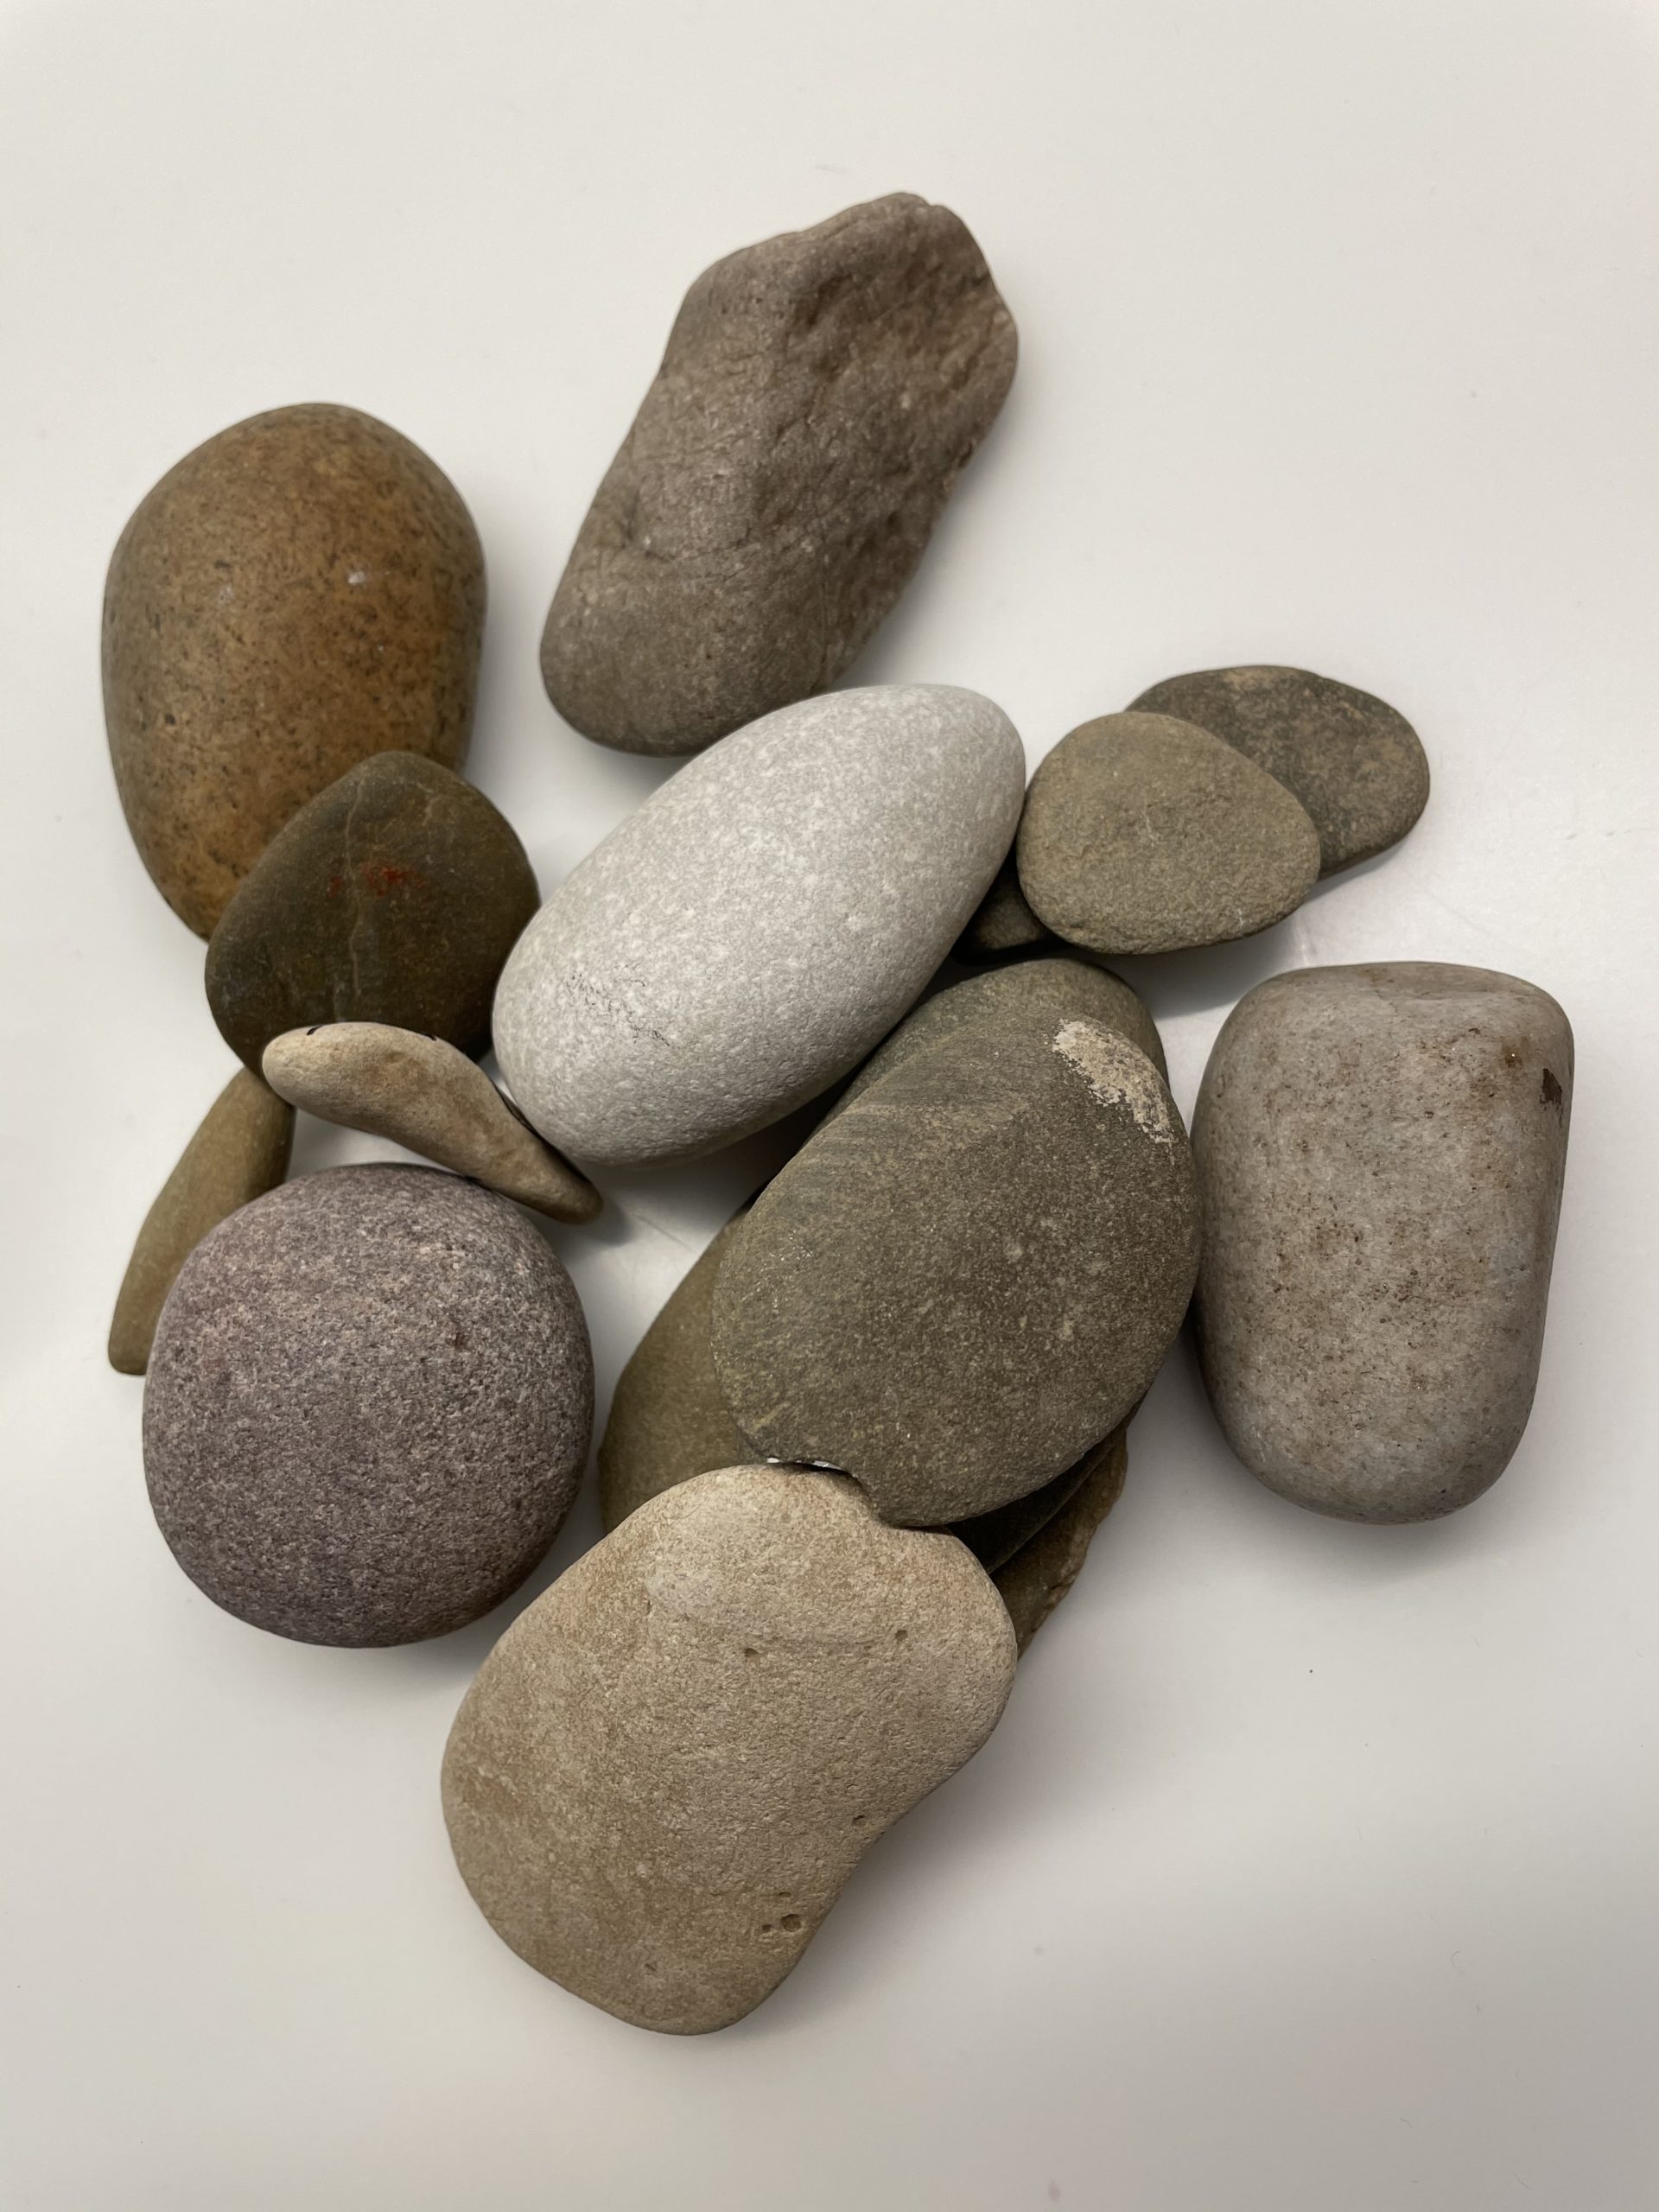 Bild zum Schritt 1 für das Bastel- und DIY-Abenteuer für Kinder: 'Sucht euch zuerst glatte abgerundete Steine. Diese können unterschiedliche Farben...'